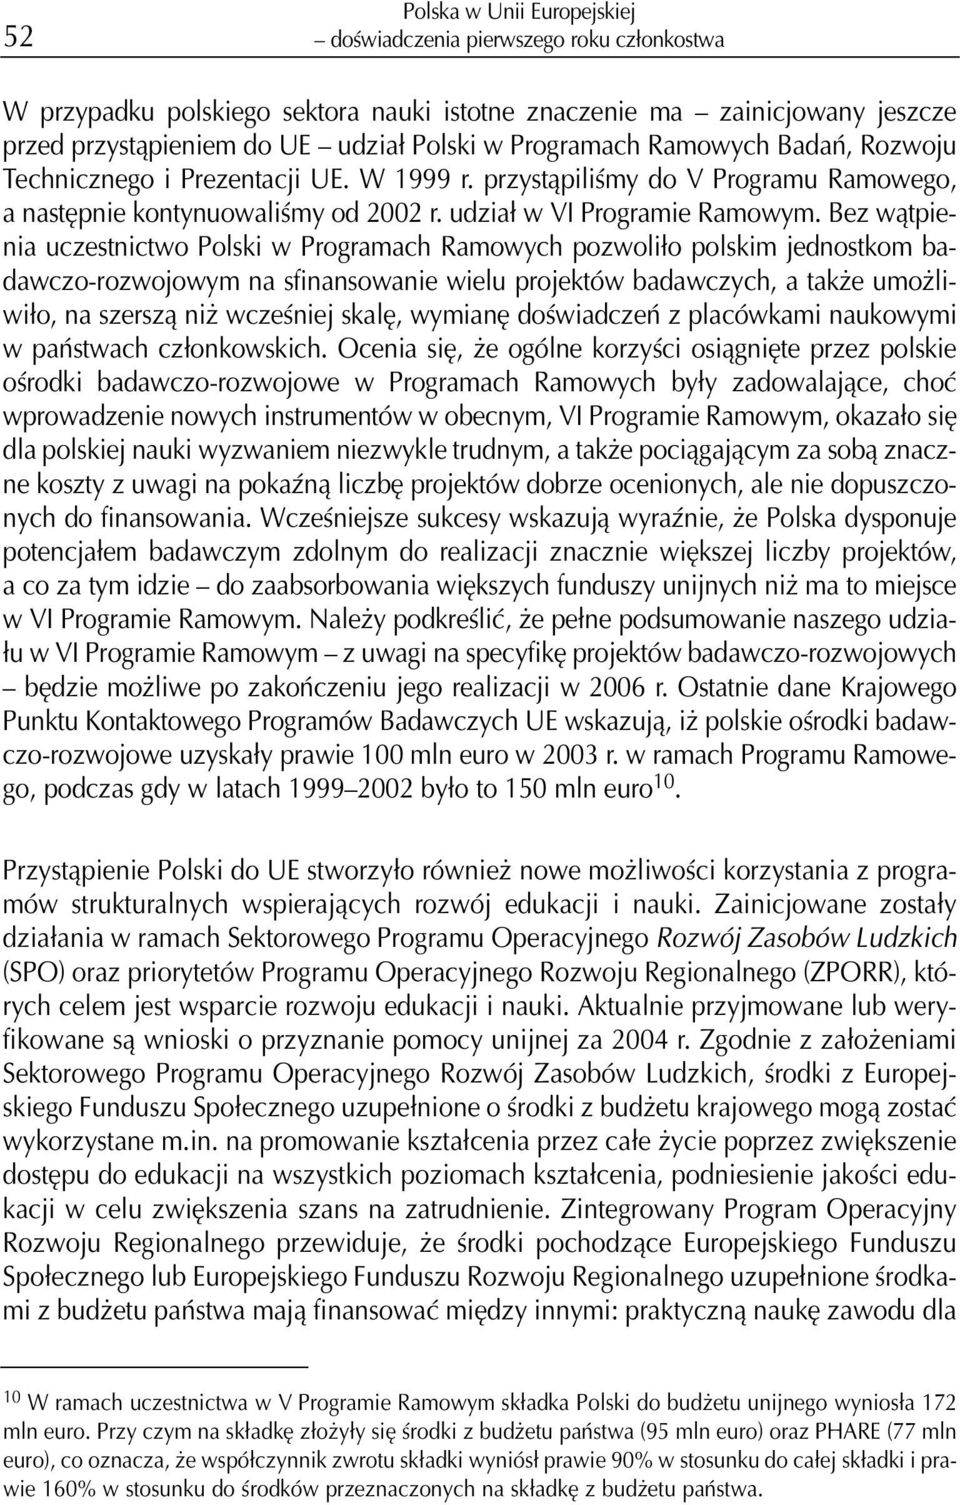 Bez w¹tpienia uczestnictwo Polski w Programach Ramowych pozwoli³o polskim jednostkom badawczo-rozwojowym na sfinansowanie wielu projektów badawczych, a tak e umo liwi³o, na szersz¹ ni wczeœniej